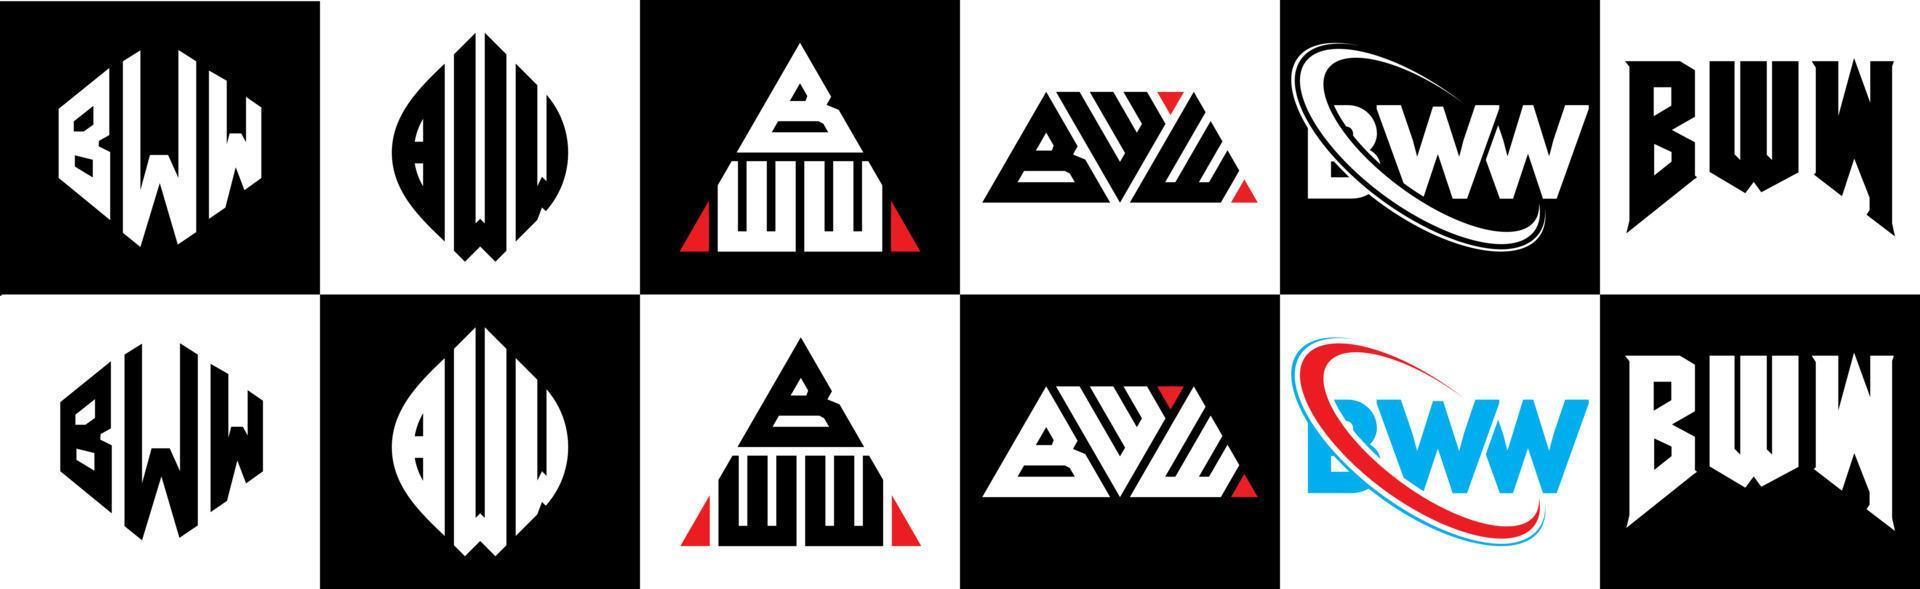 création de logo de lettre bww en six styles. bww polygone, cercle, triangle, hexagone, style plat et simple avec logo de lettre de variation de couleur noir et blanc dans un plan de travail. logo minimaliste et classique bww vecteur